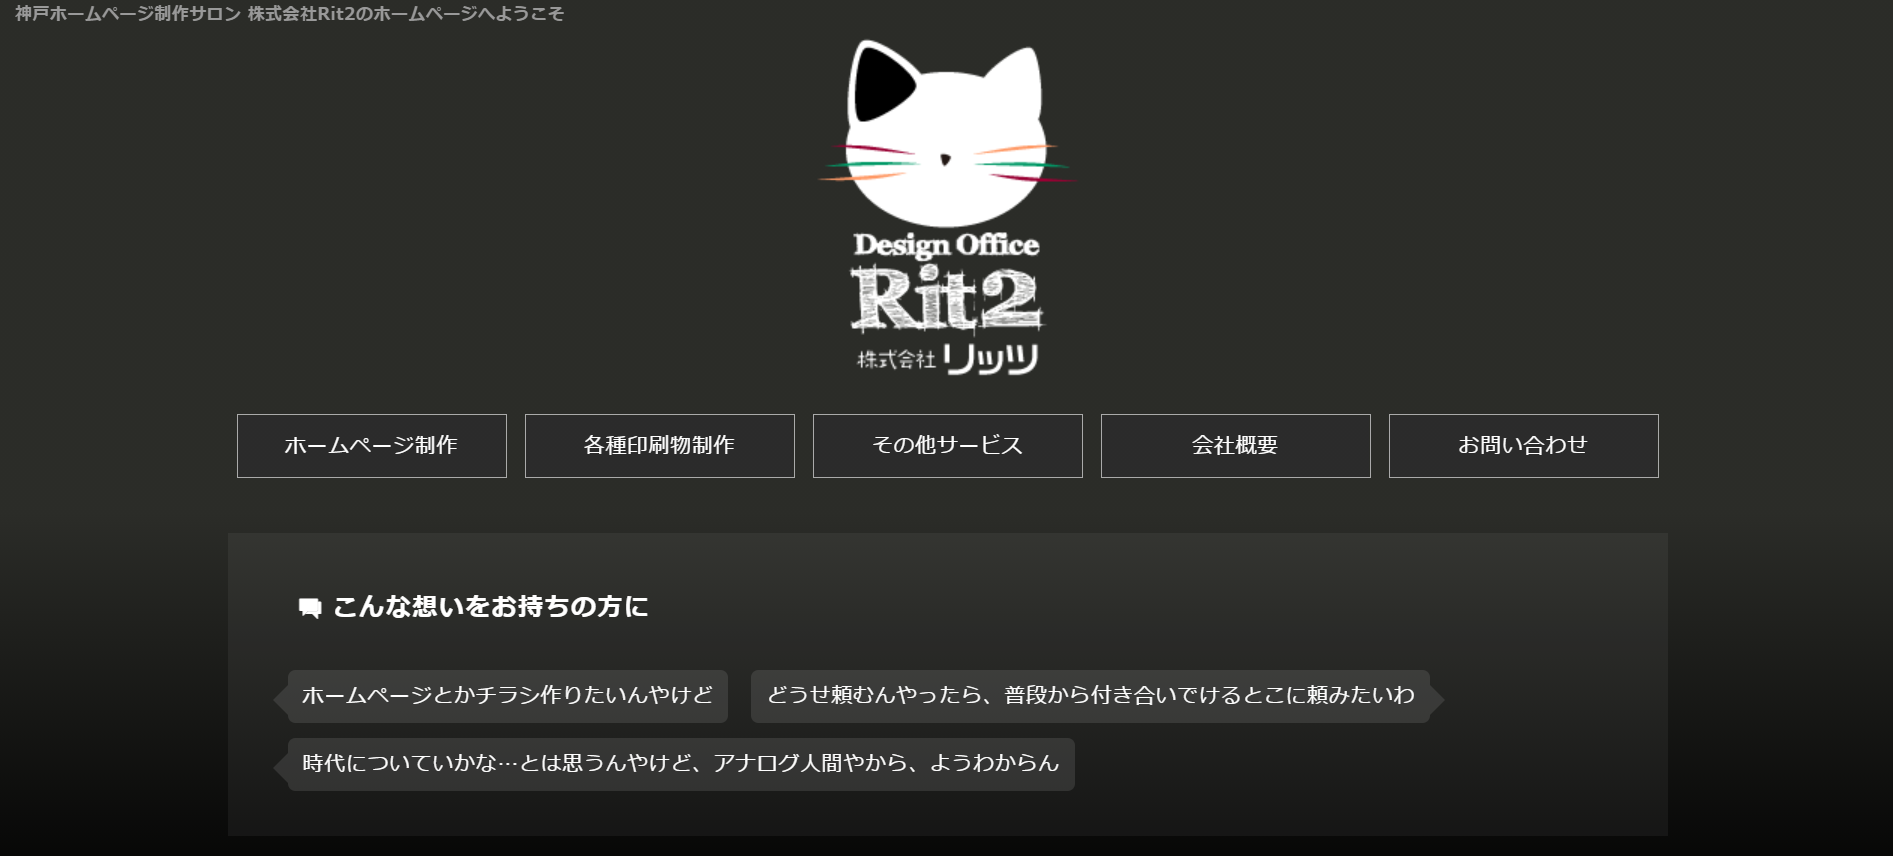 株式会社Rit2の株式会社Rit2サービス